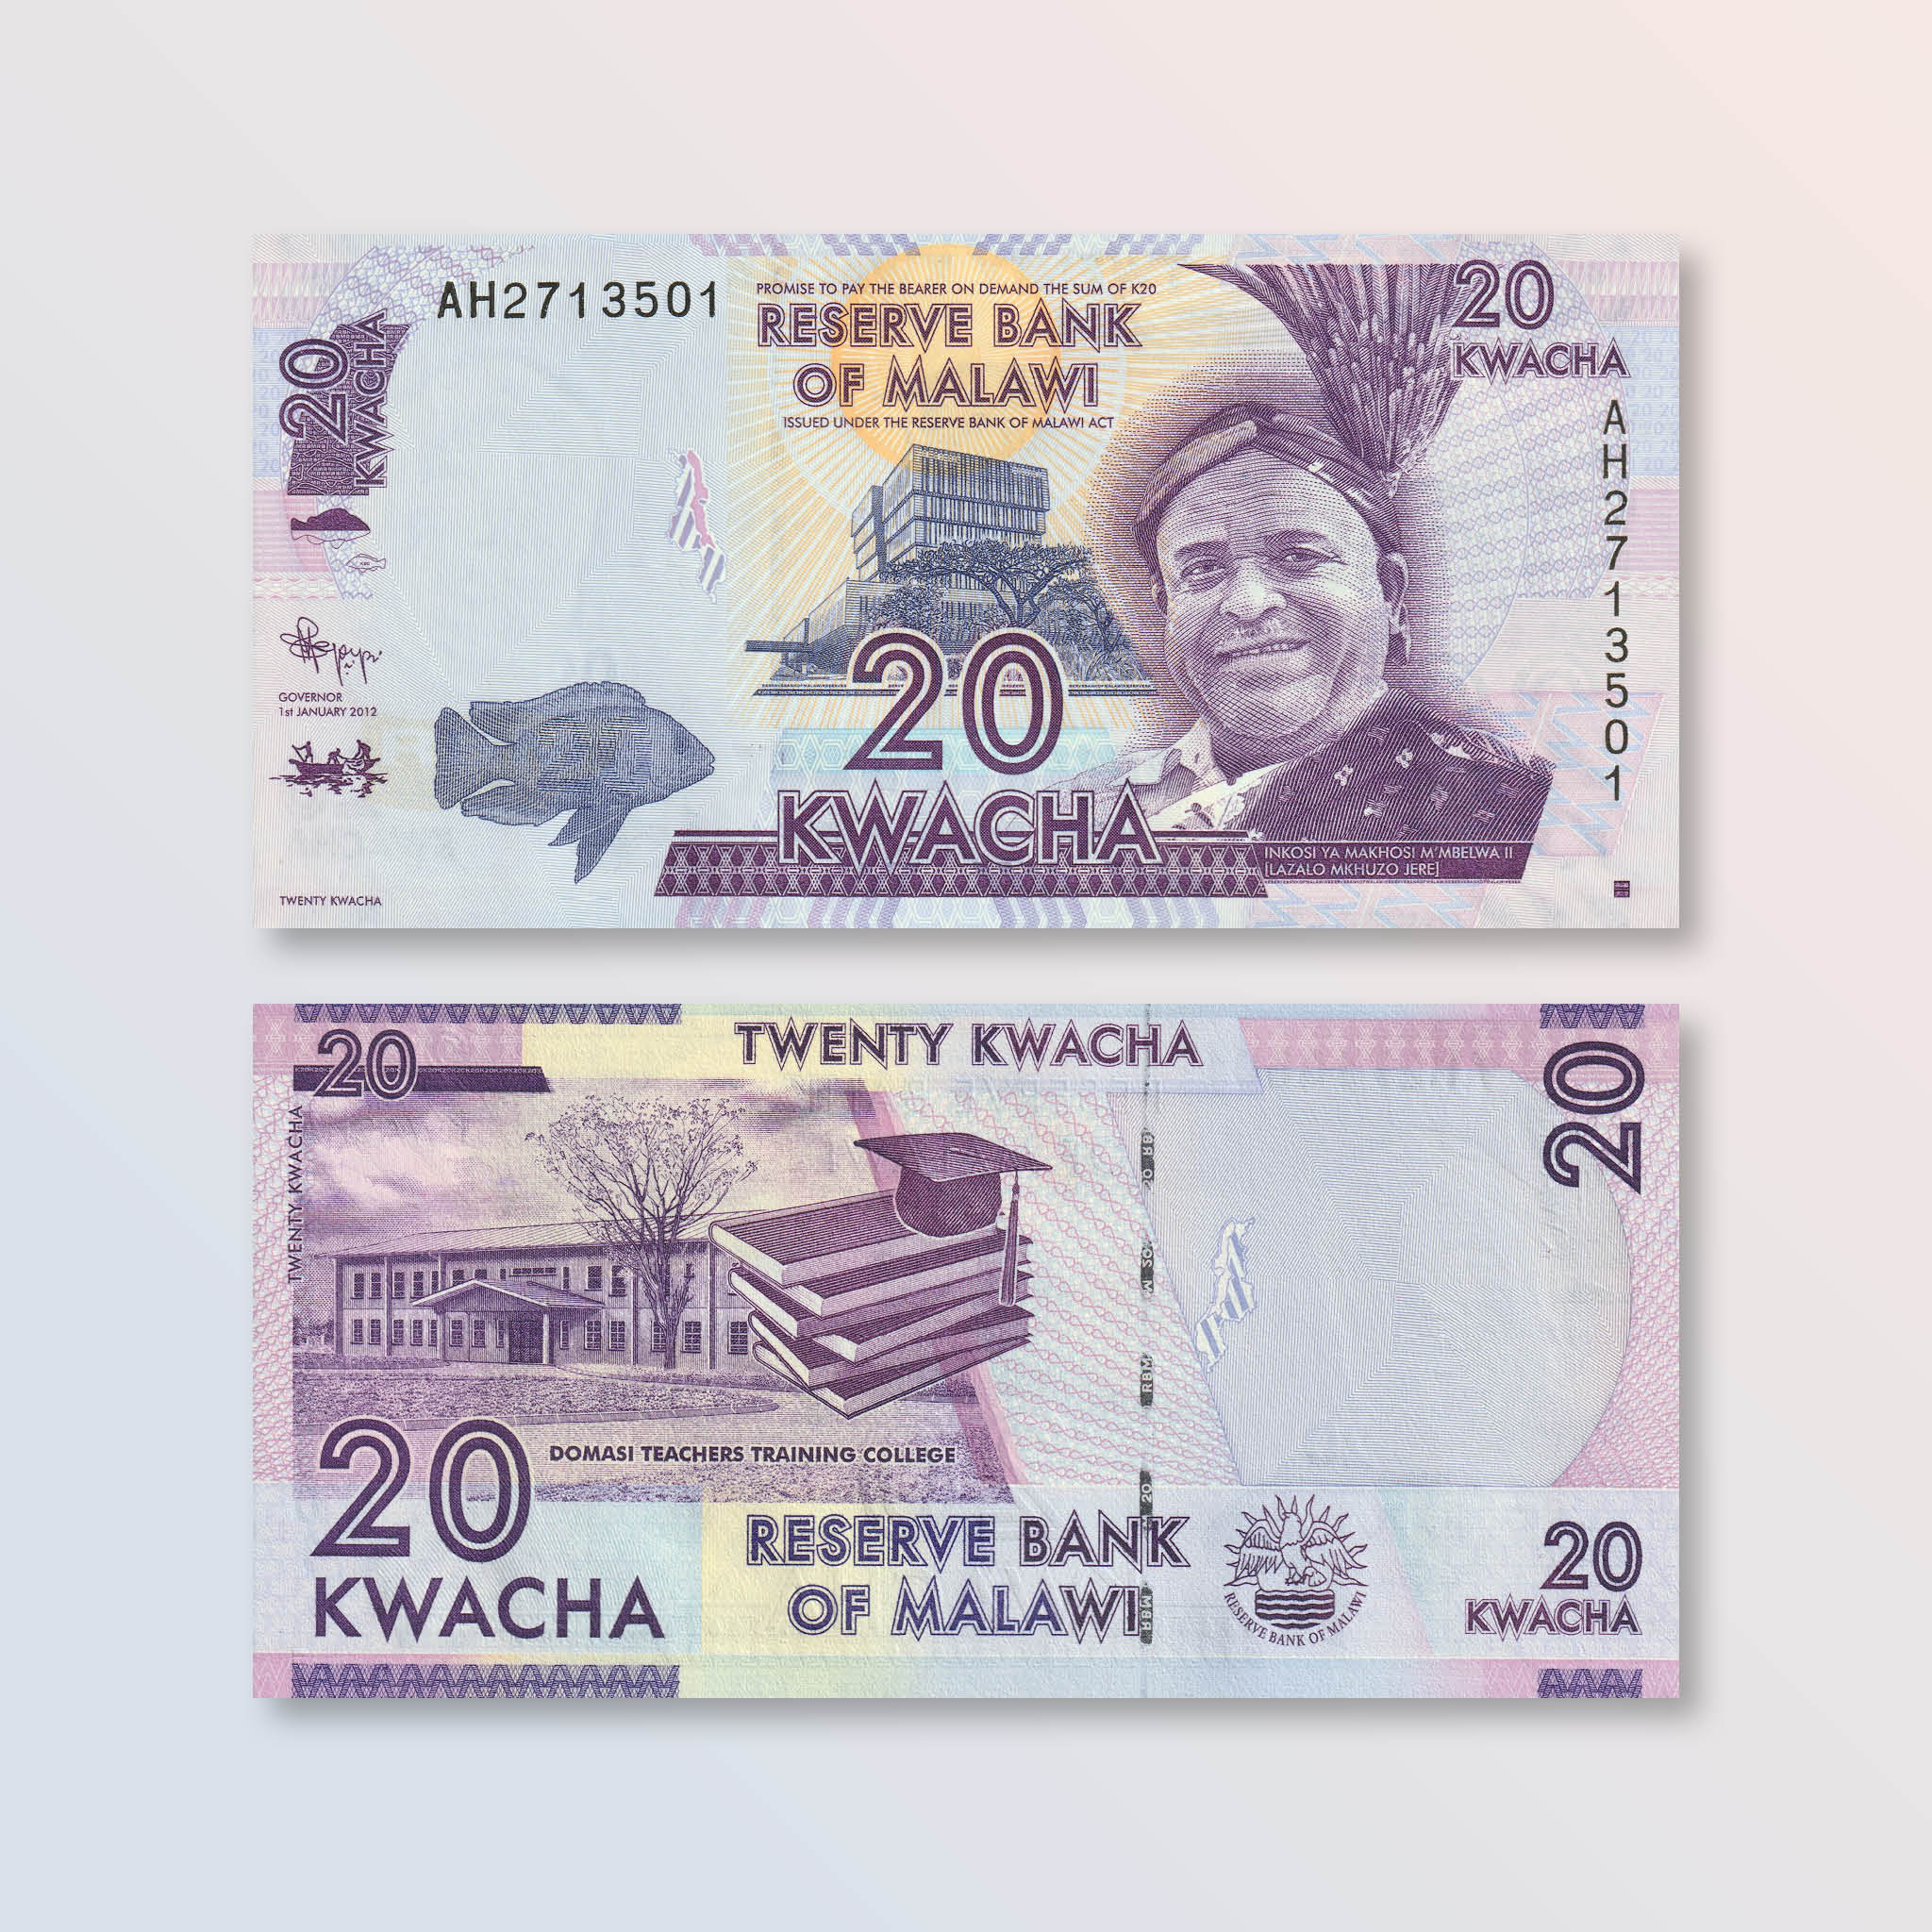 Malawi 20 Kwacha, 2012, B150a, P57a, UNC - Robert's World Money - World Banknotes